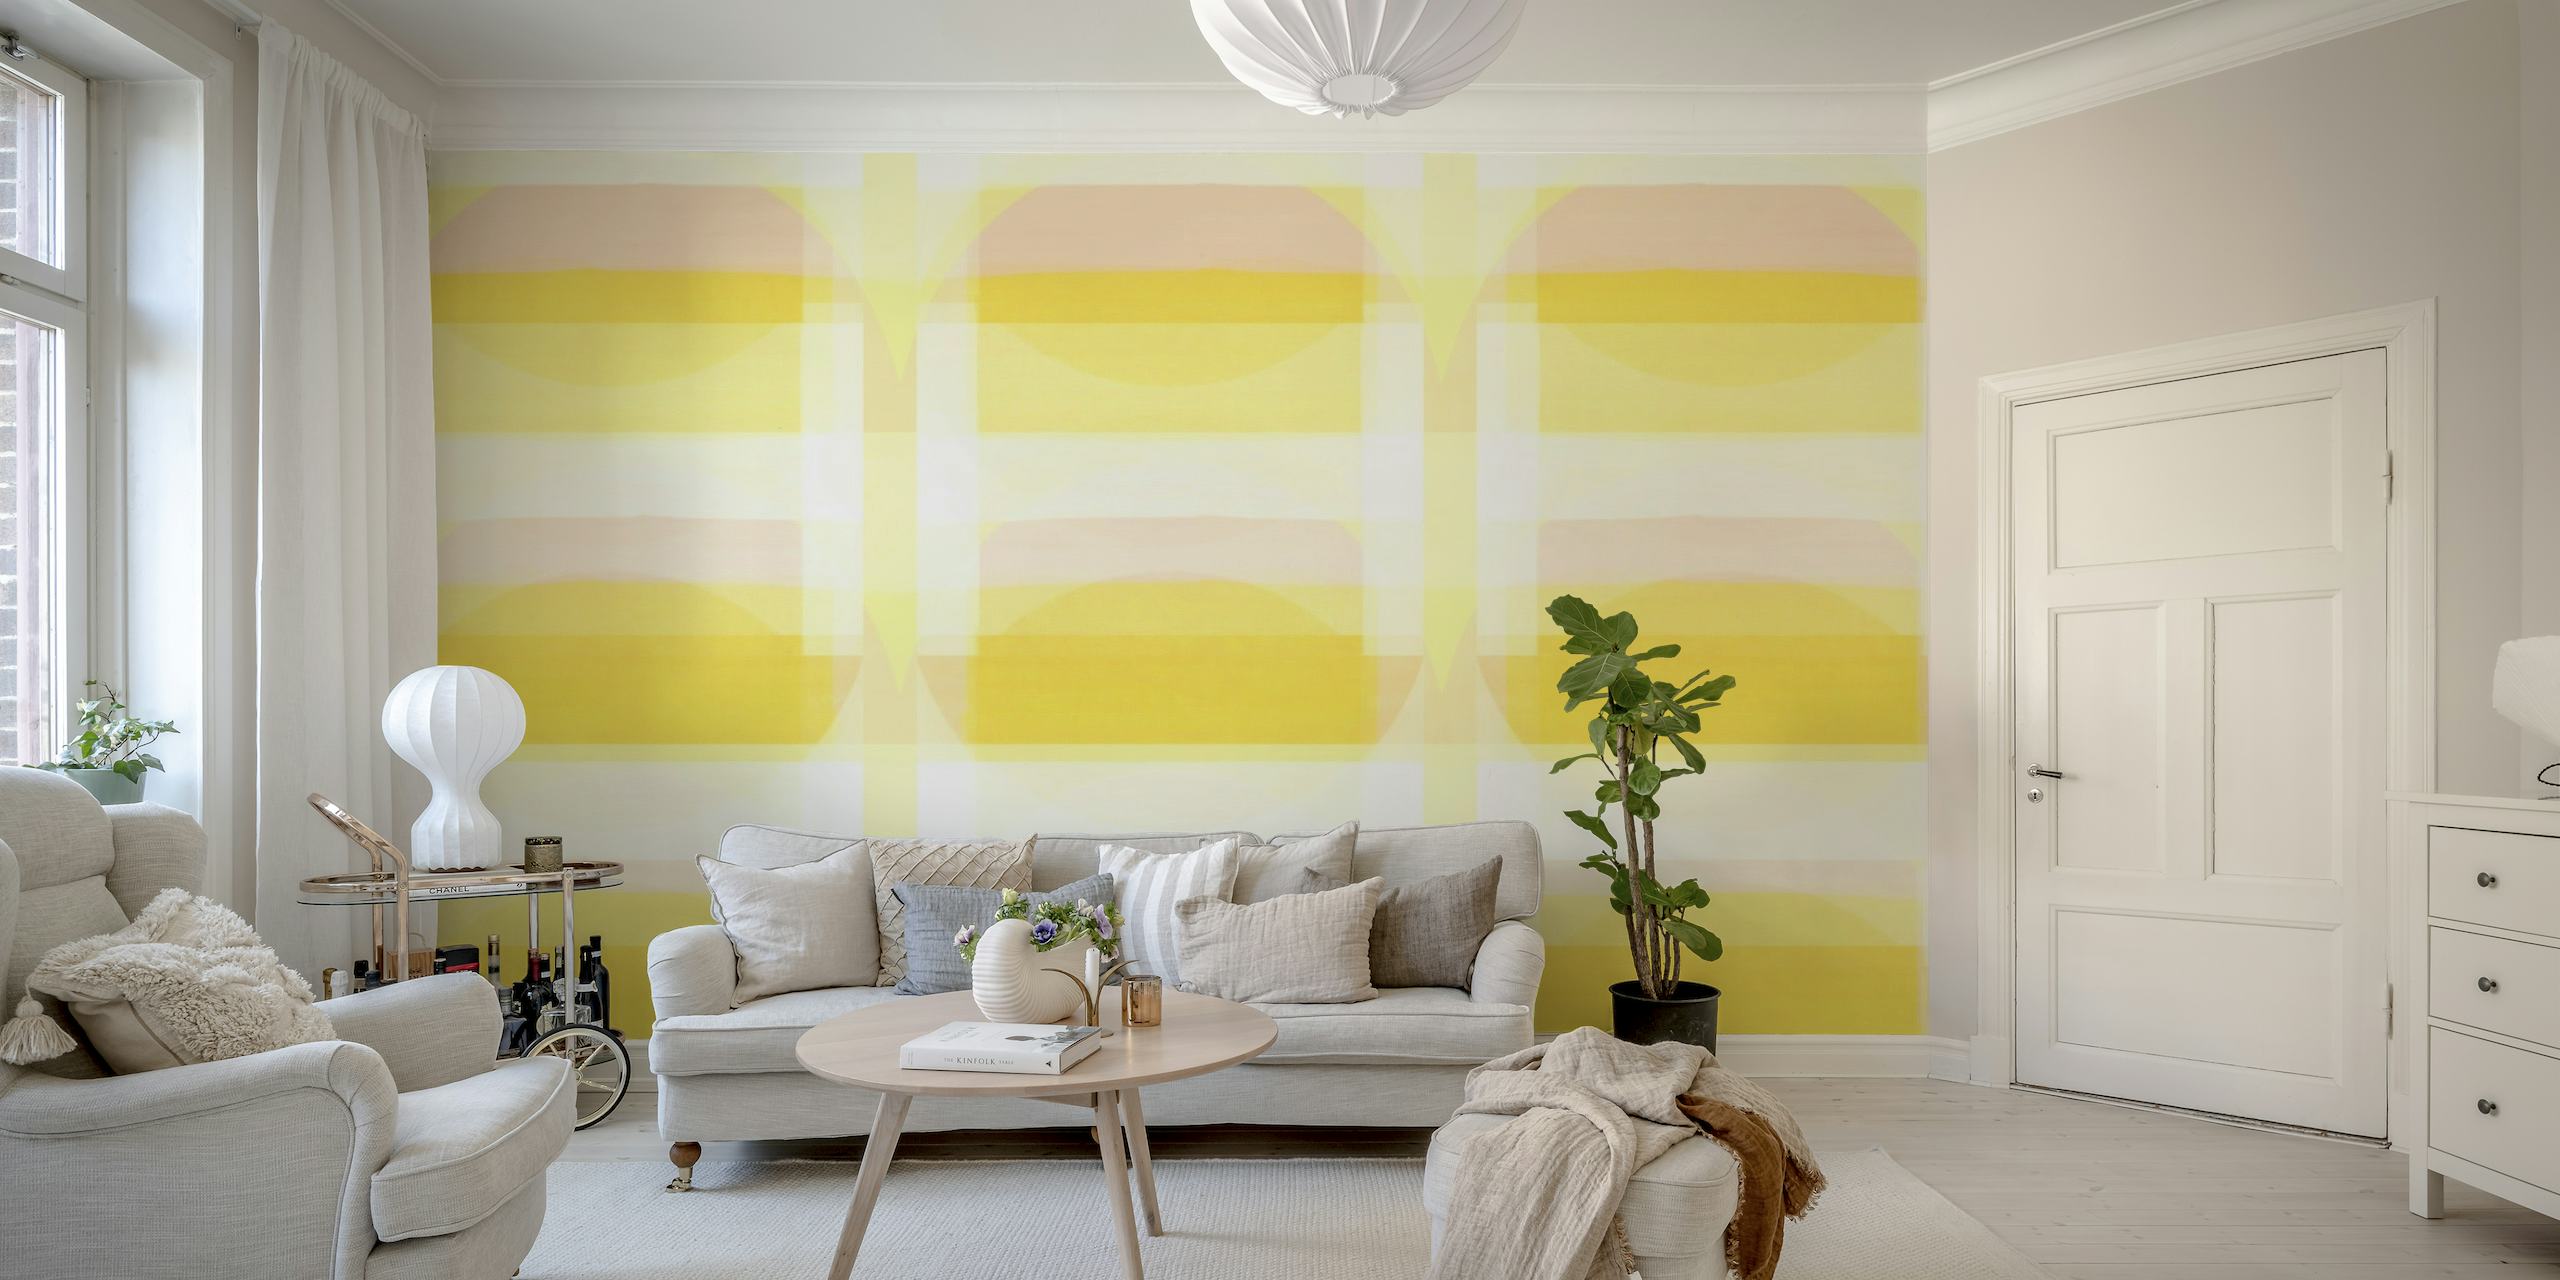 Fotomural con motivos geométricos Sunny Bauhaus en amarillo pastel y blanco